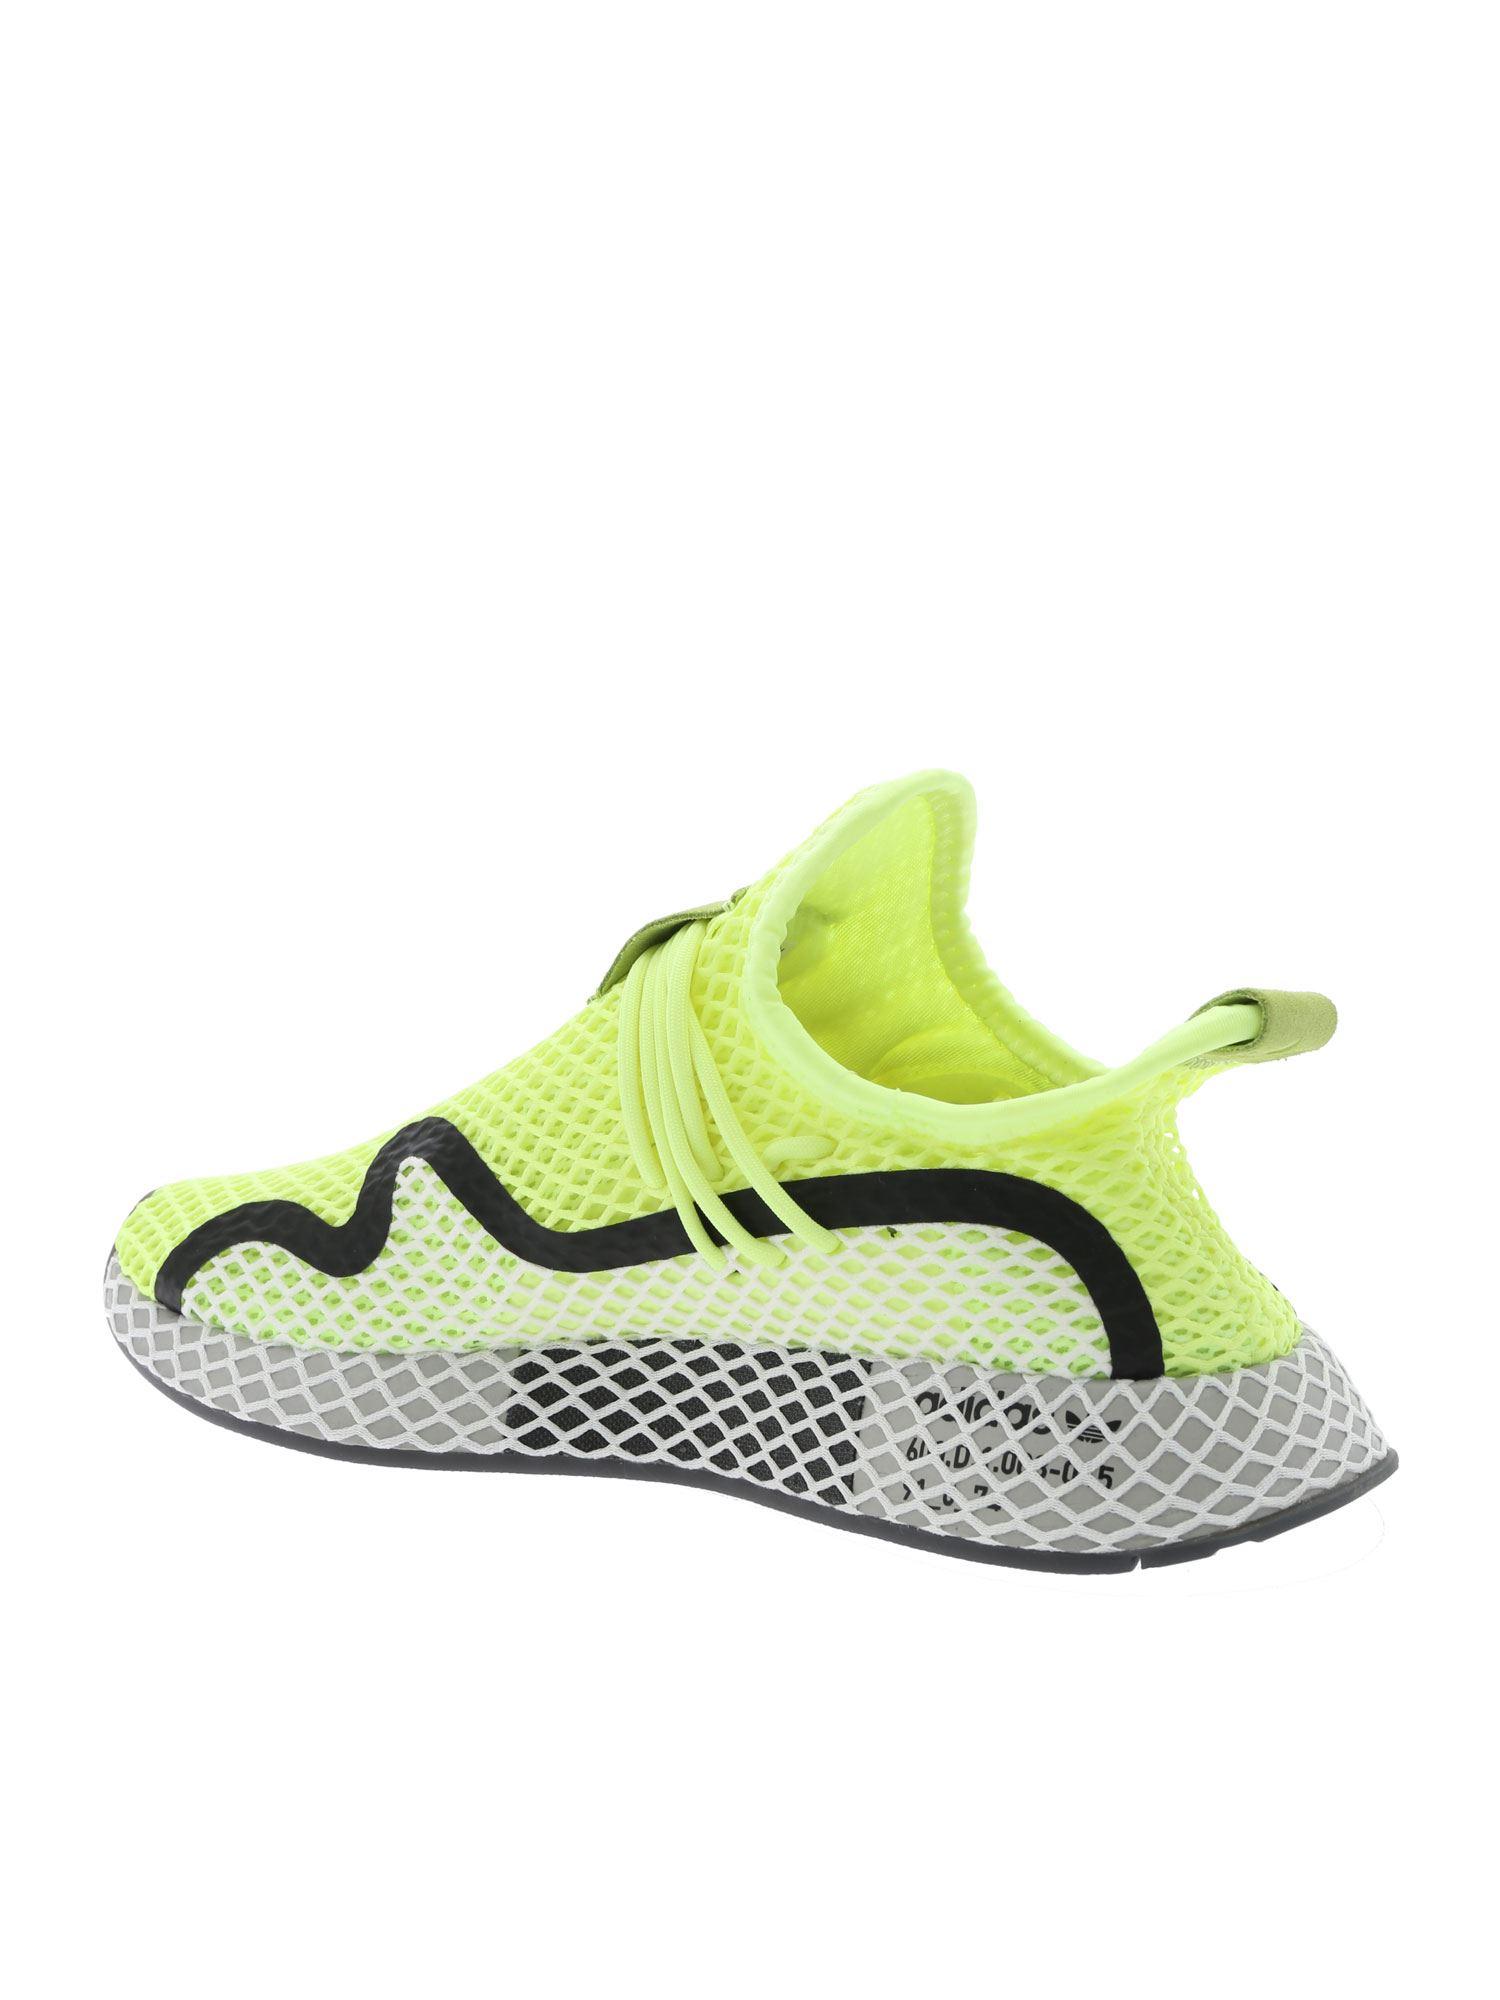 adidas Originals Deerupt S Sneakers In Fluo Yellow for Men - Lyst